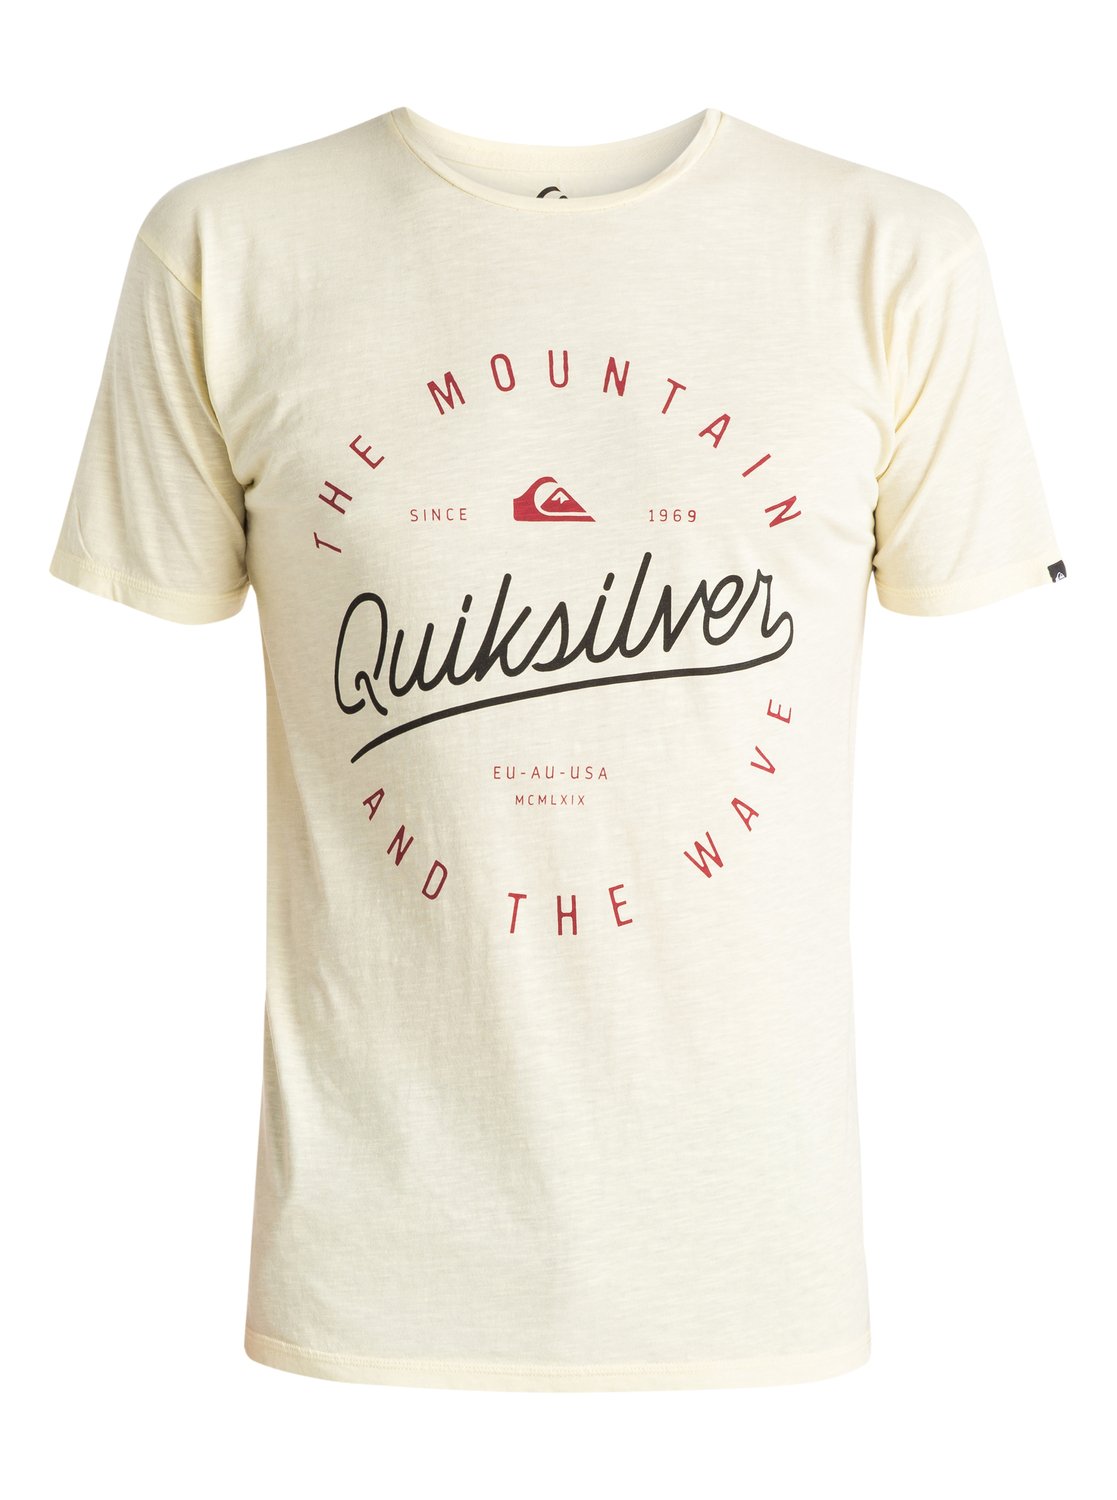 Slub Scriptville - T-shirt pour homme - Quiksilver